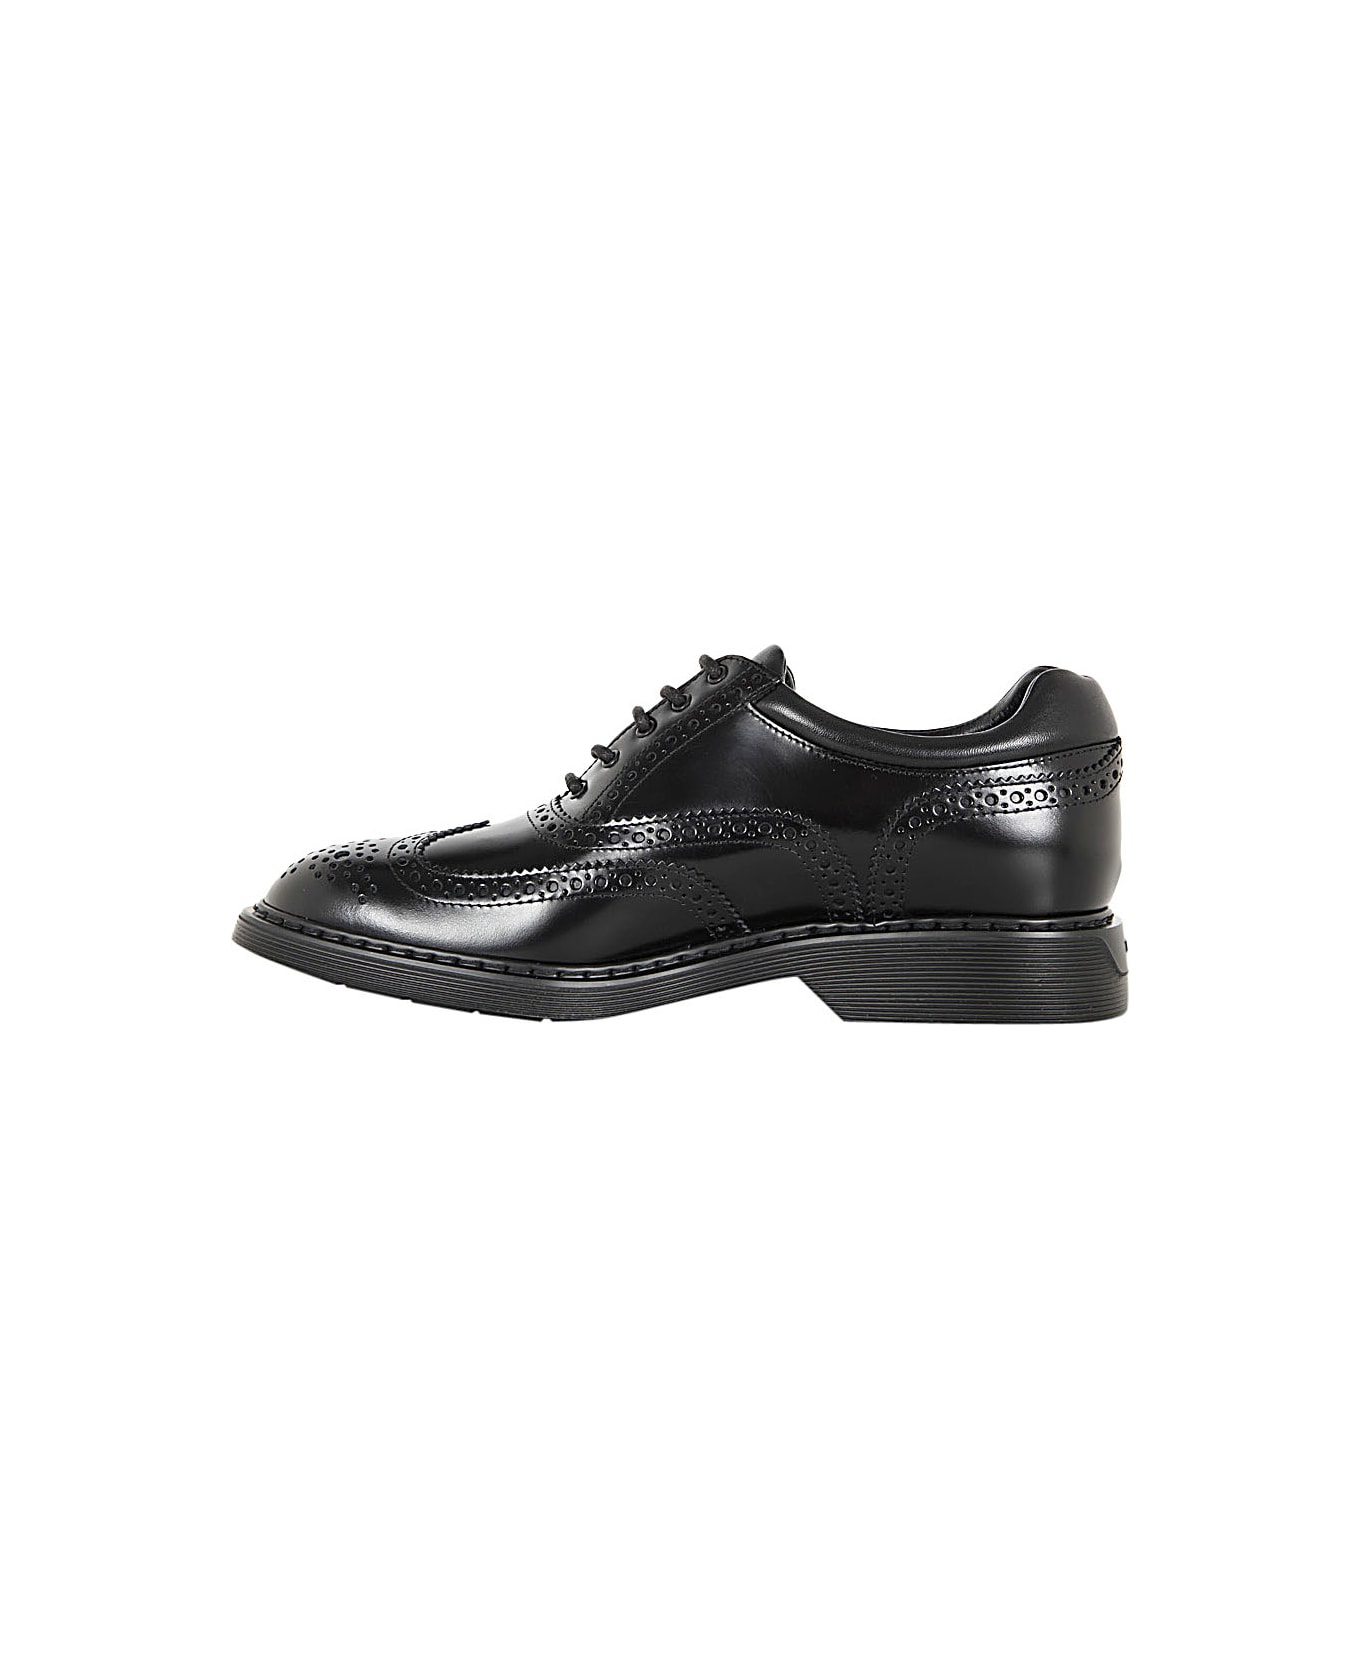 Hogan H576 Lace-up Multi Shoes - Black